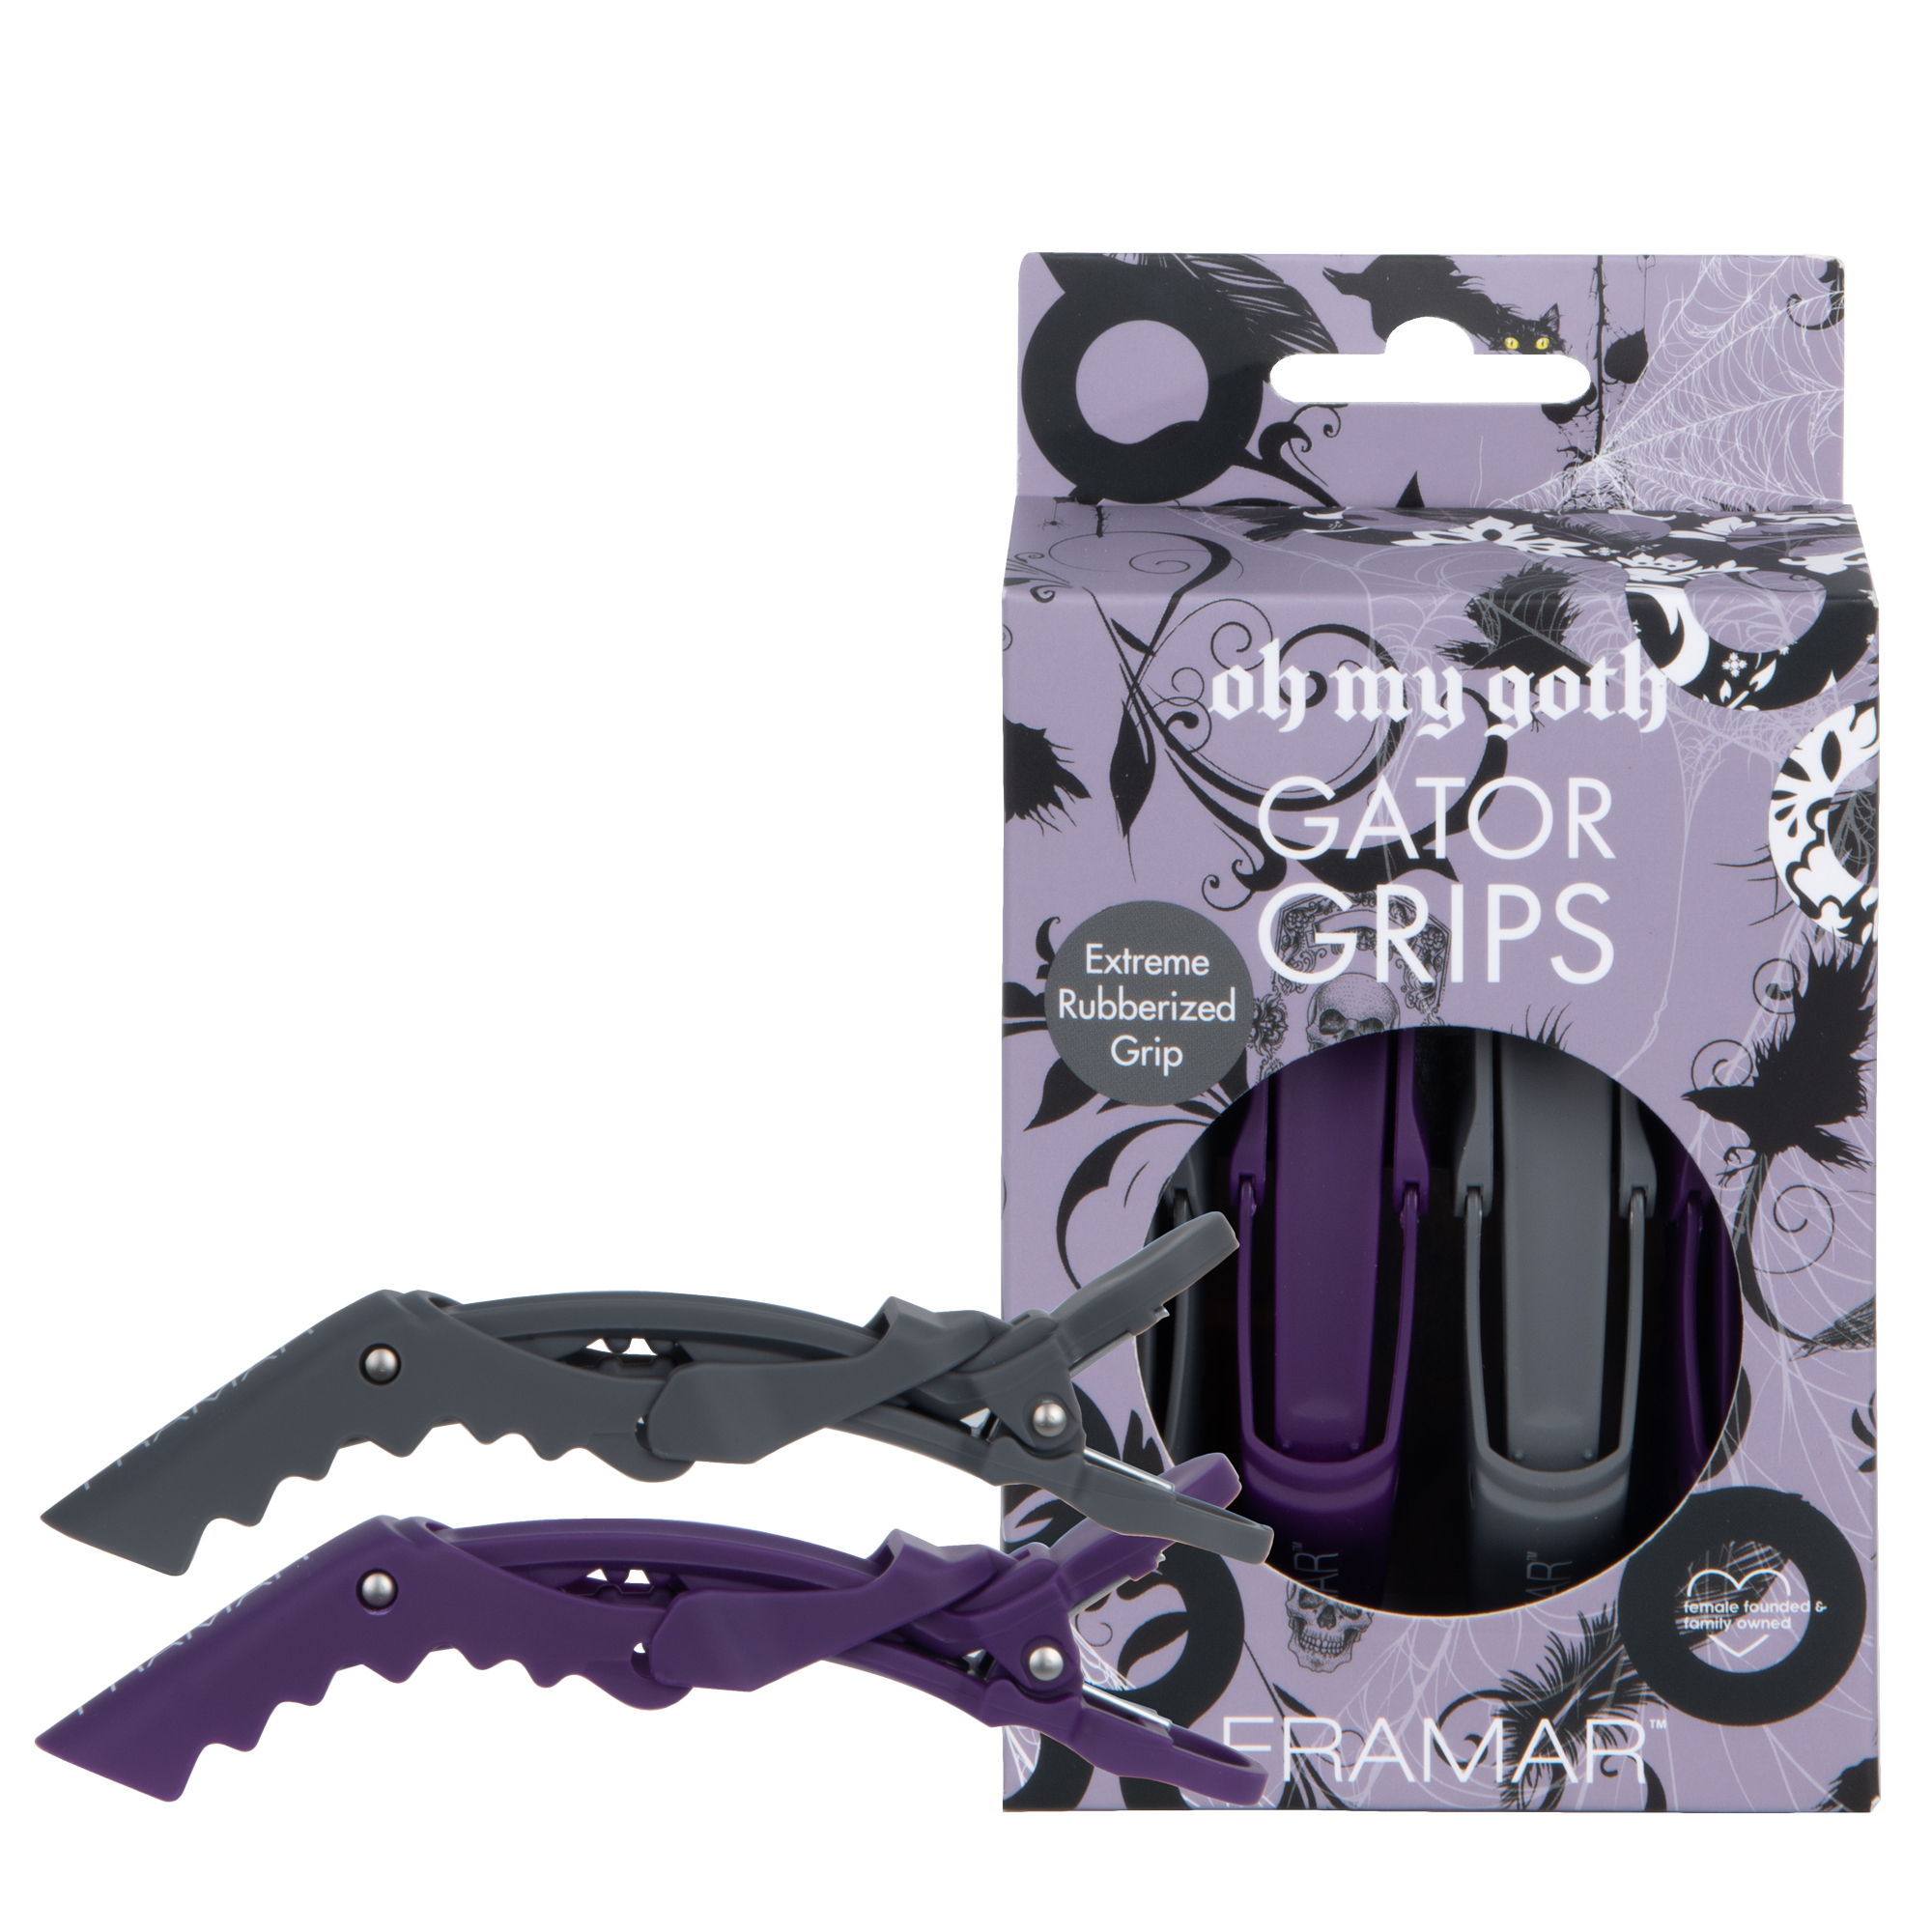 Framar CLIPS: Gator Grips - 4 pk - Oh My Goth